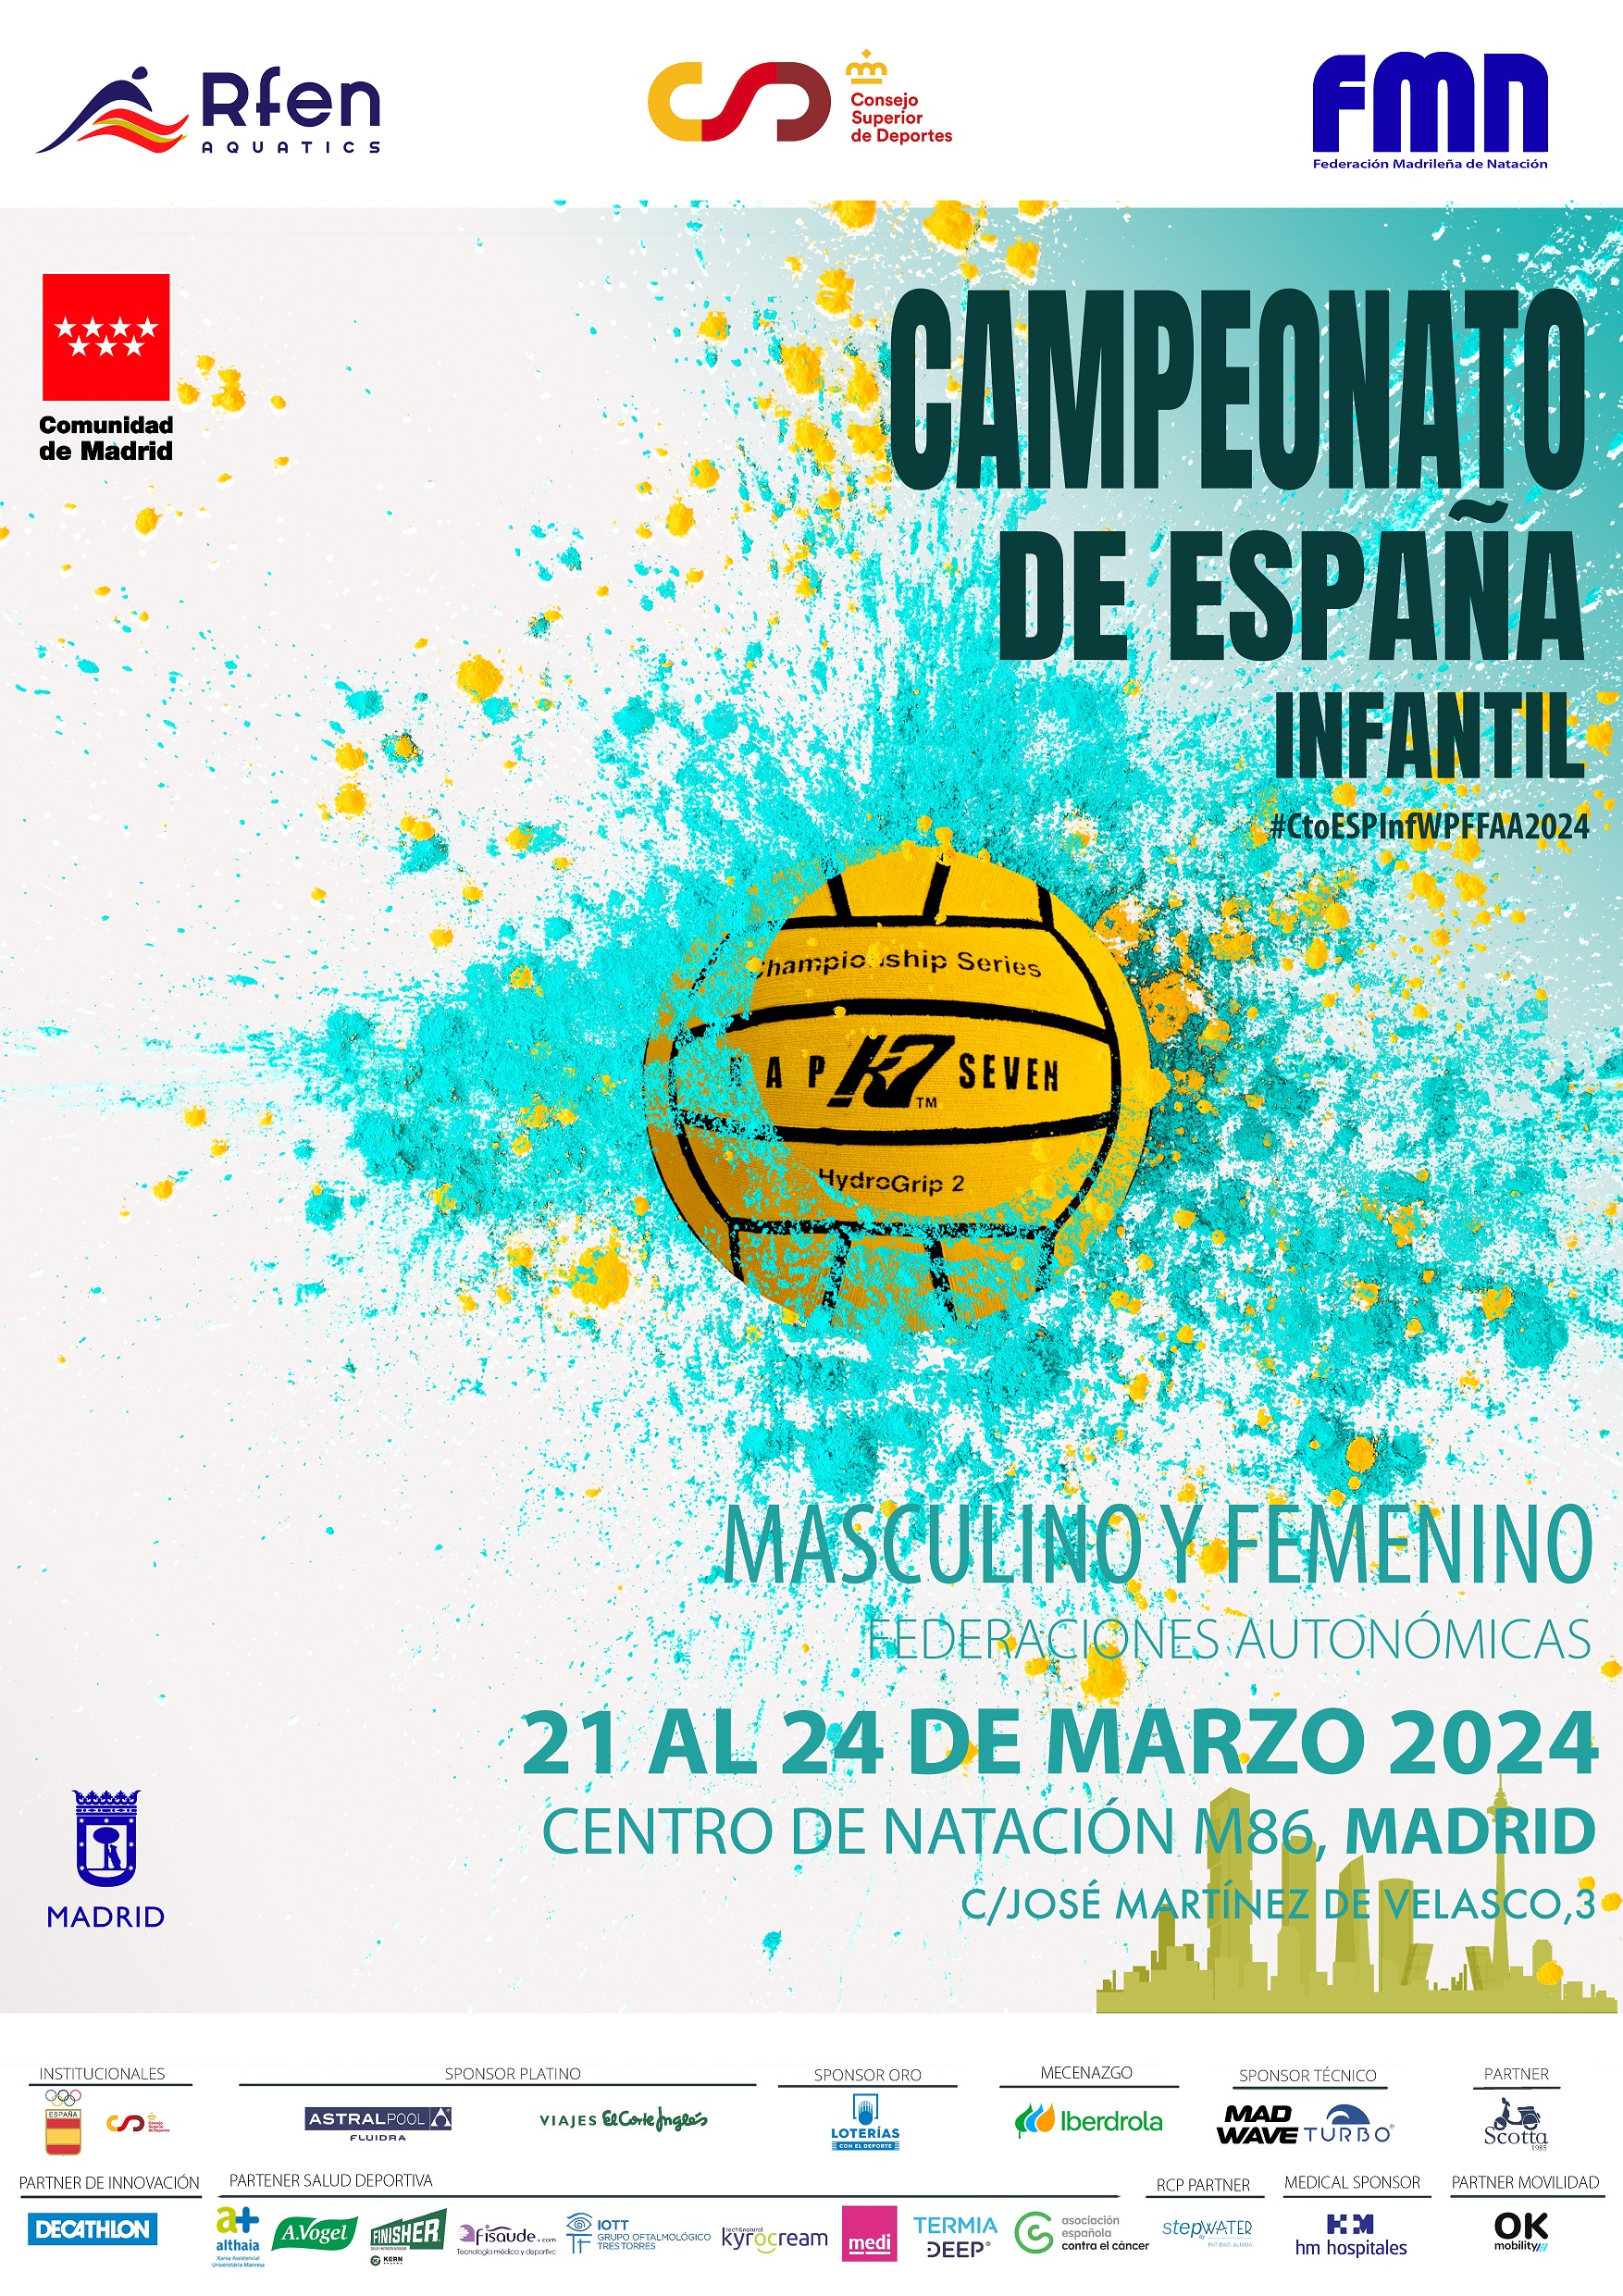 Campeonato de España infantil por FFTT waterpolo